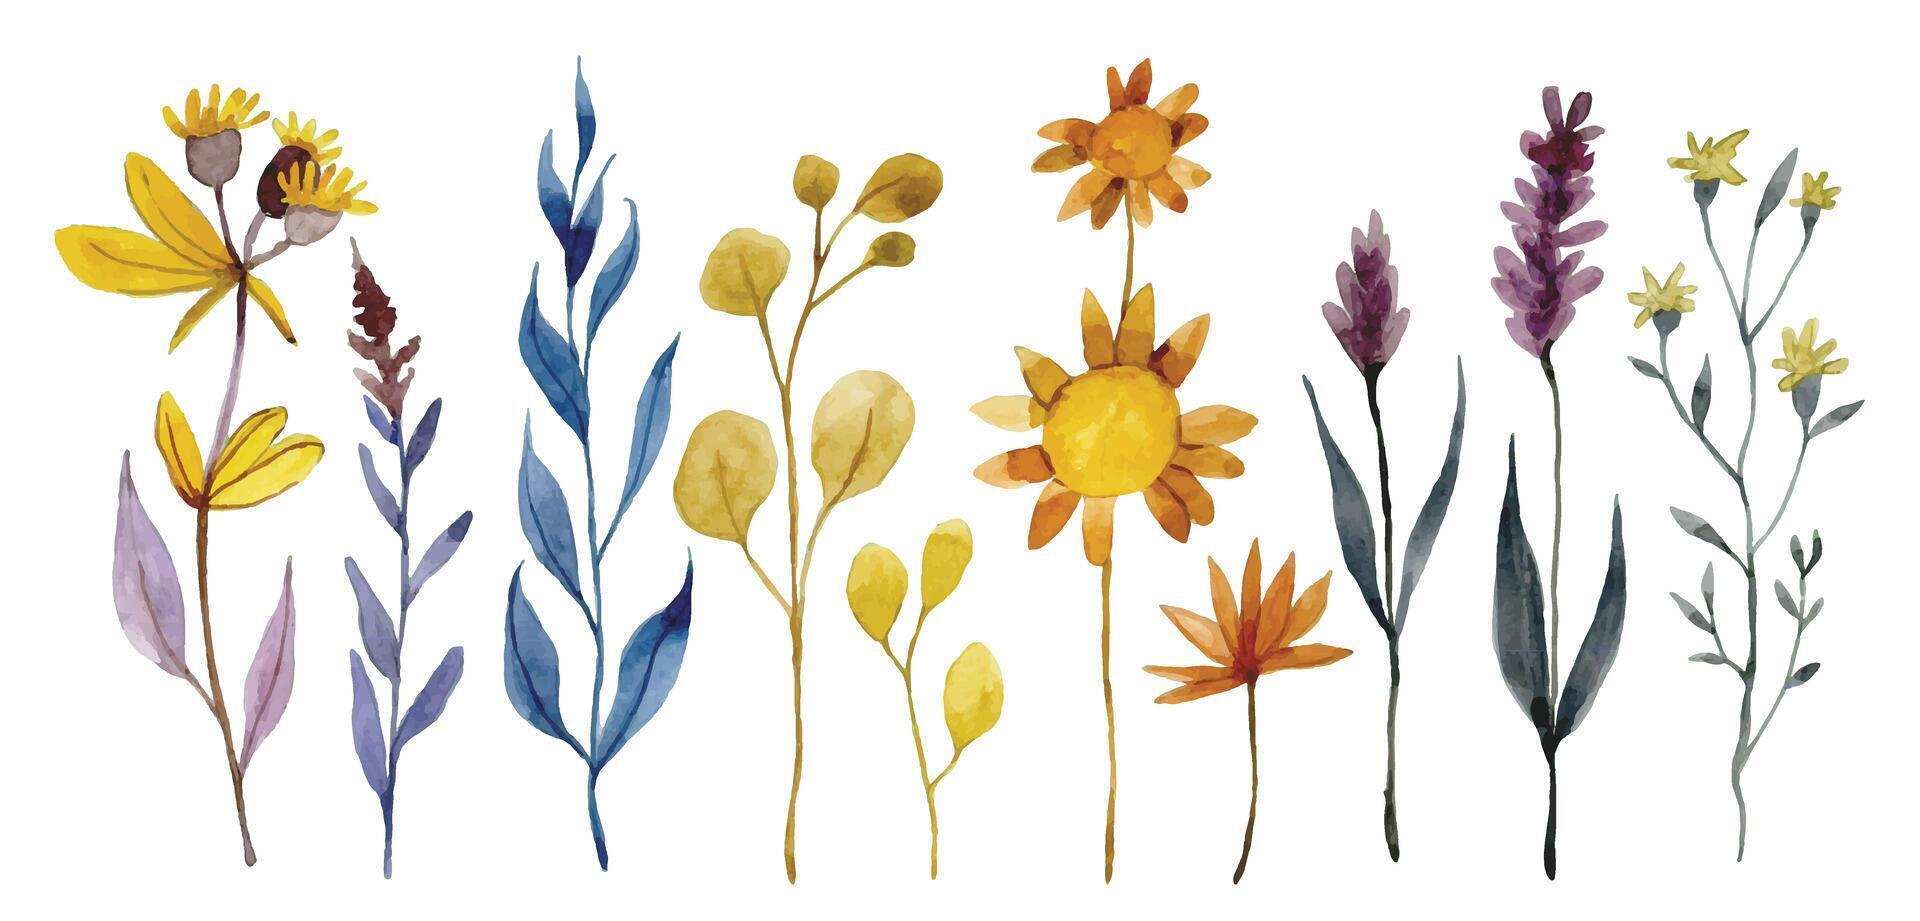 Aquarell Zeichnung, einstellen von trocken Wildblumen, Kräuter und Blätter. Herbst Herbarium, Boho vektor